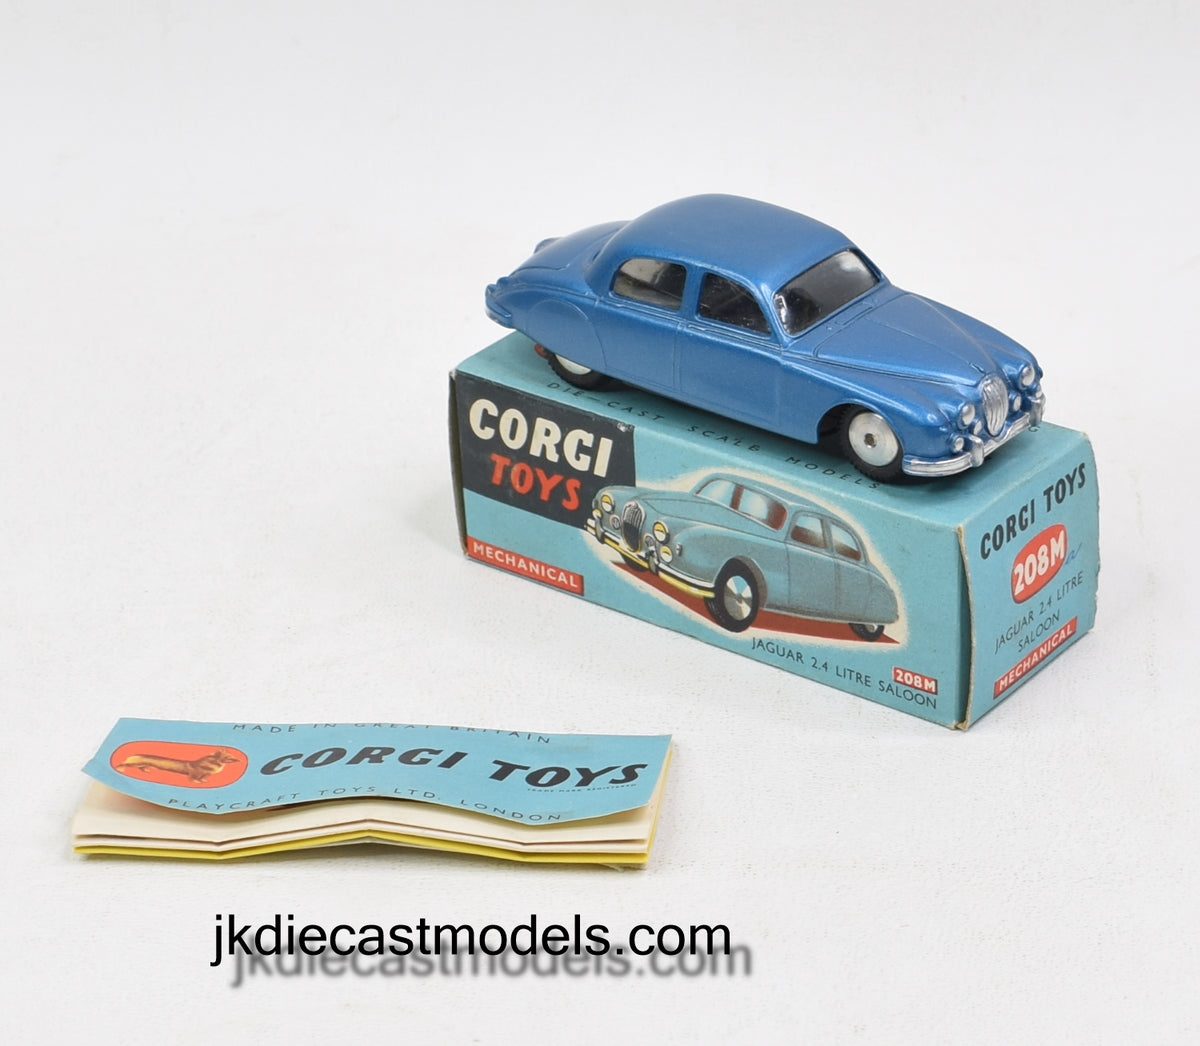 Corgi Toys 208m Jaguar 2.4 Virtually Mint/Nice box